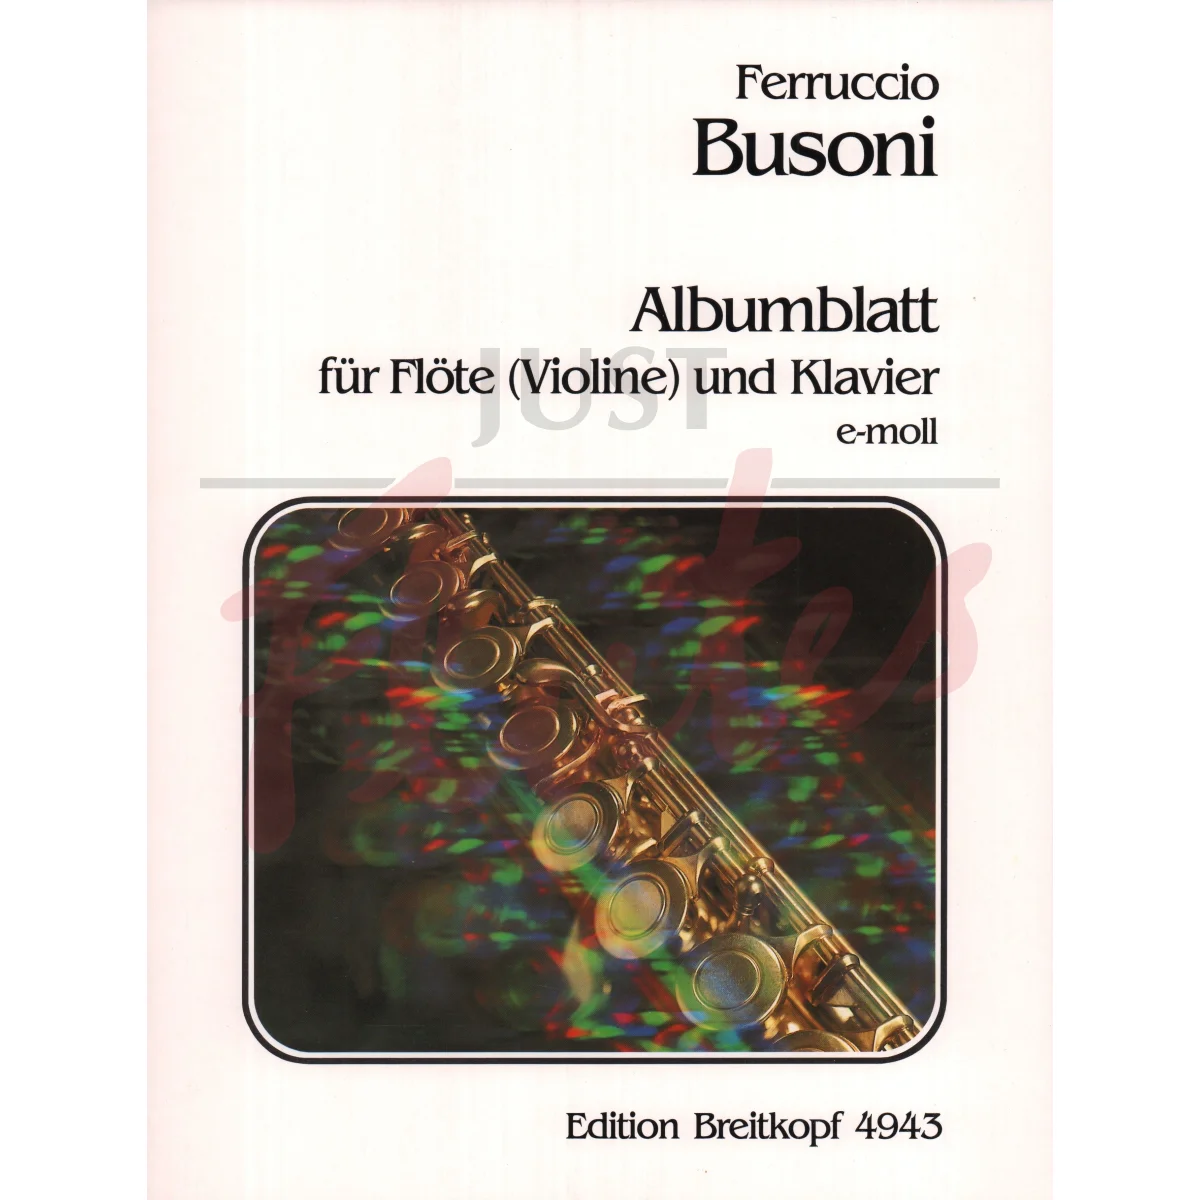 Album Leaf in E minor for Flute/Violin and Piano